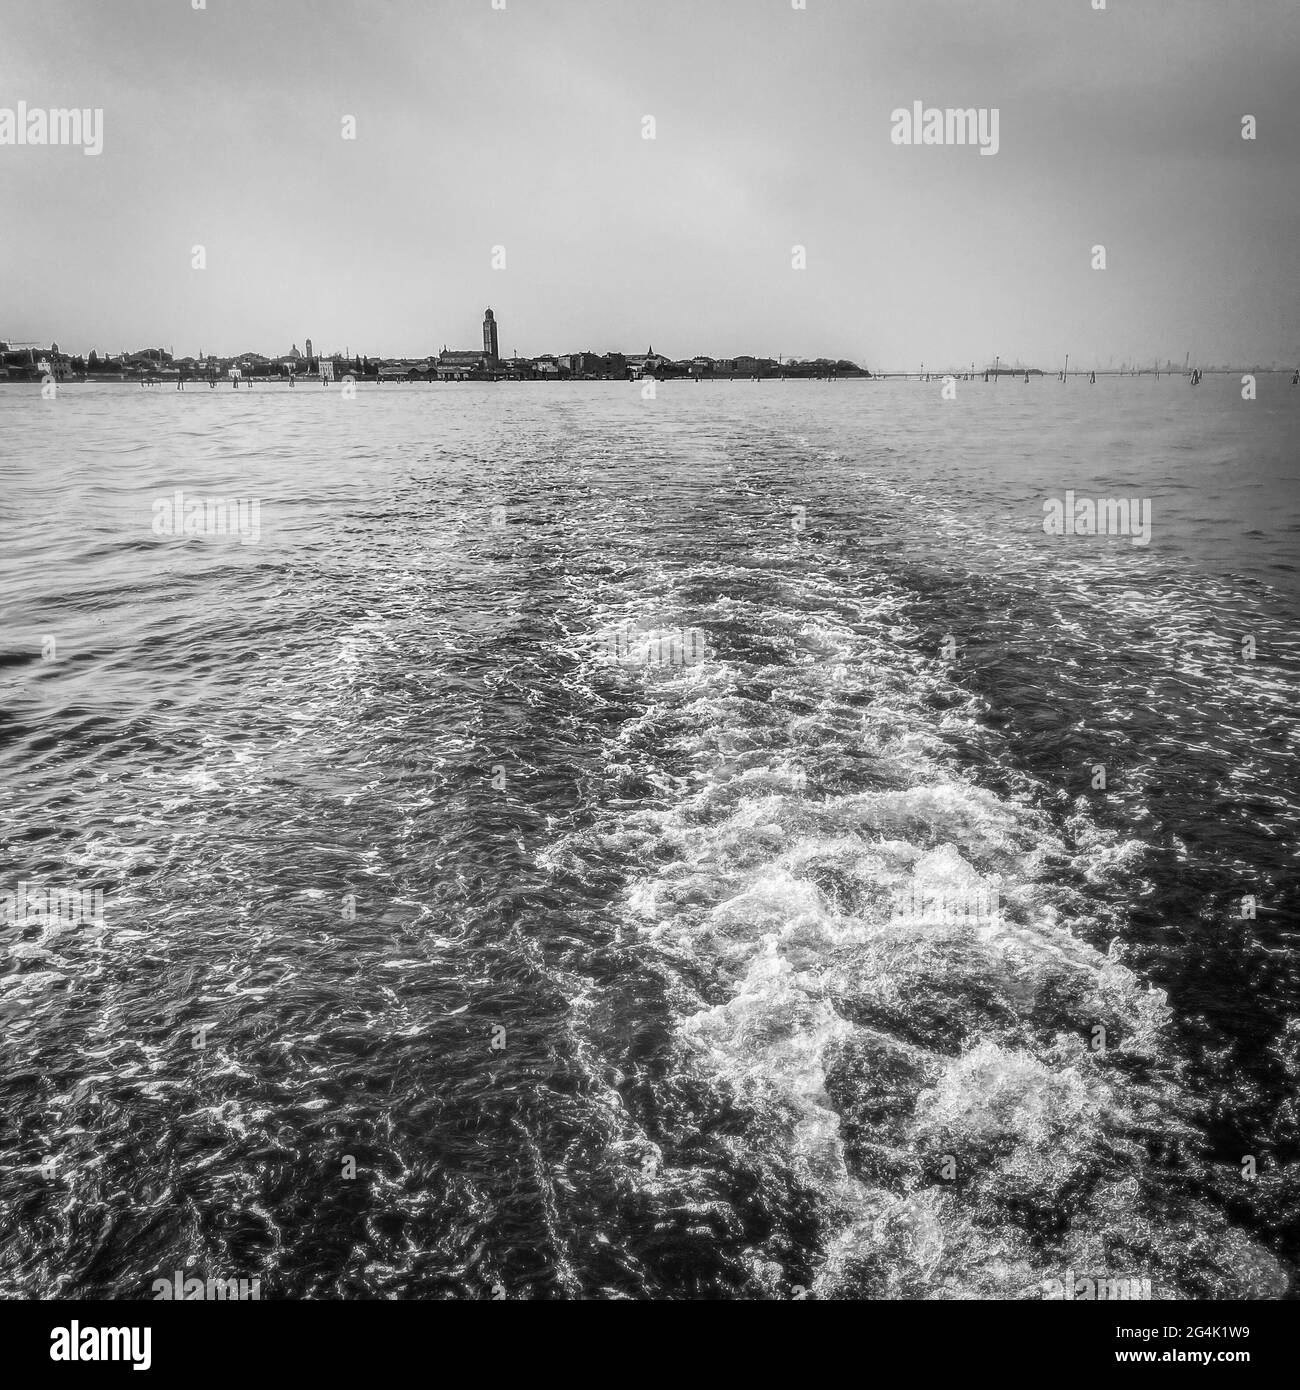 La vue sur le lagon depuis un bateau-taxi en laissant derrière lui Venise, Photographie noir et blanc Banque D'Images